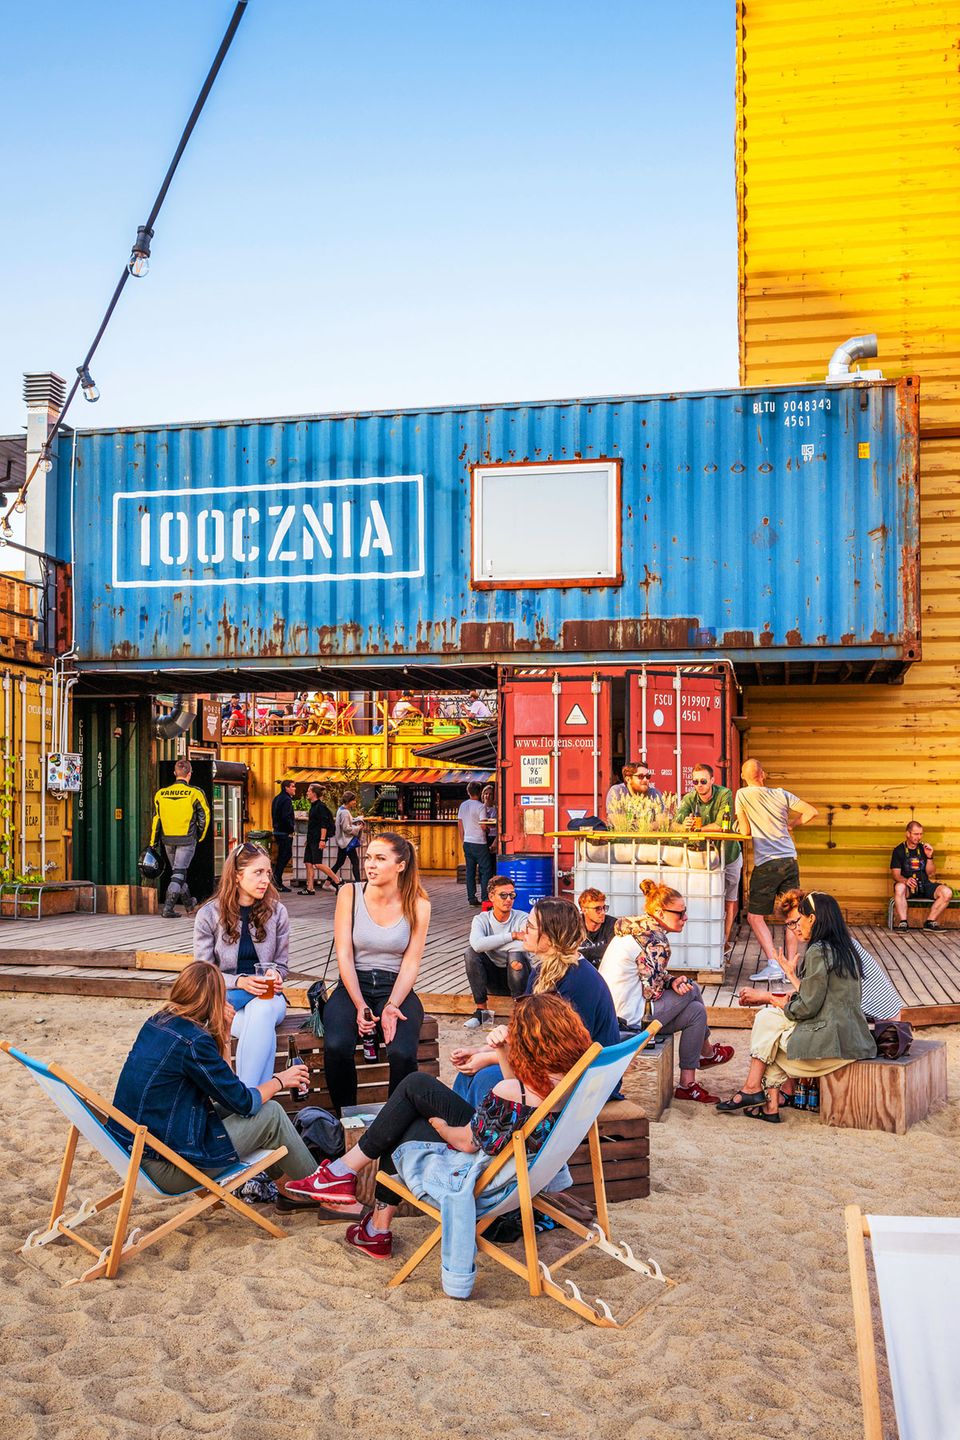 Auf die Stadt der Hafenarbeiter spielt das Kulturzentrum 100cznia an, das aus rund 20 Schiffscontainern besteht – mit Beachclub, Garküche, Galerie. 